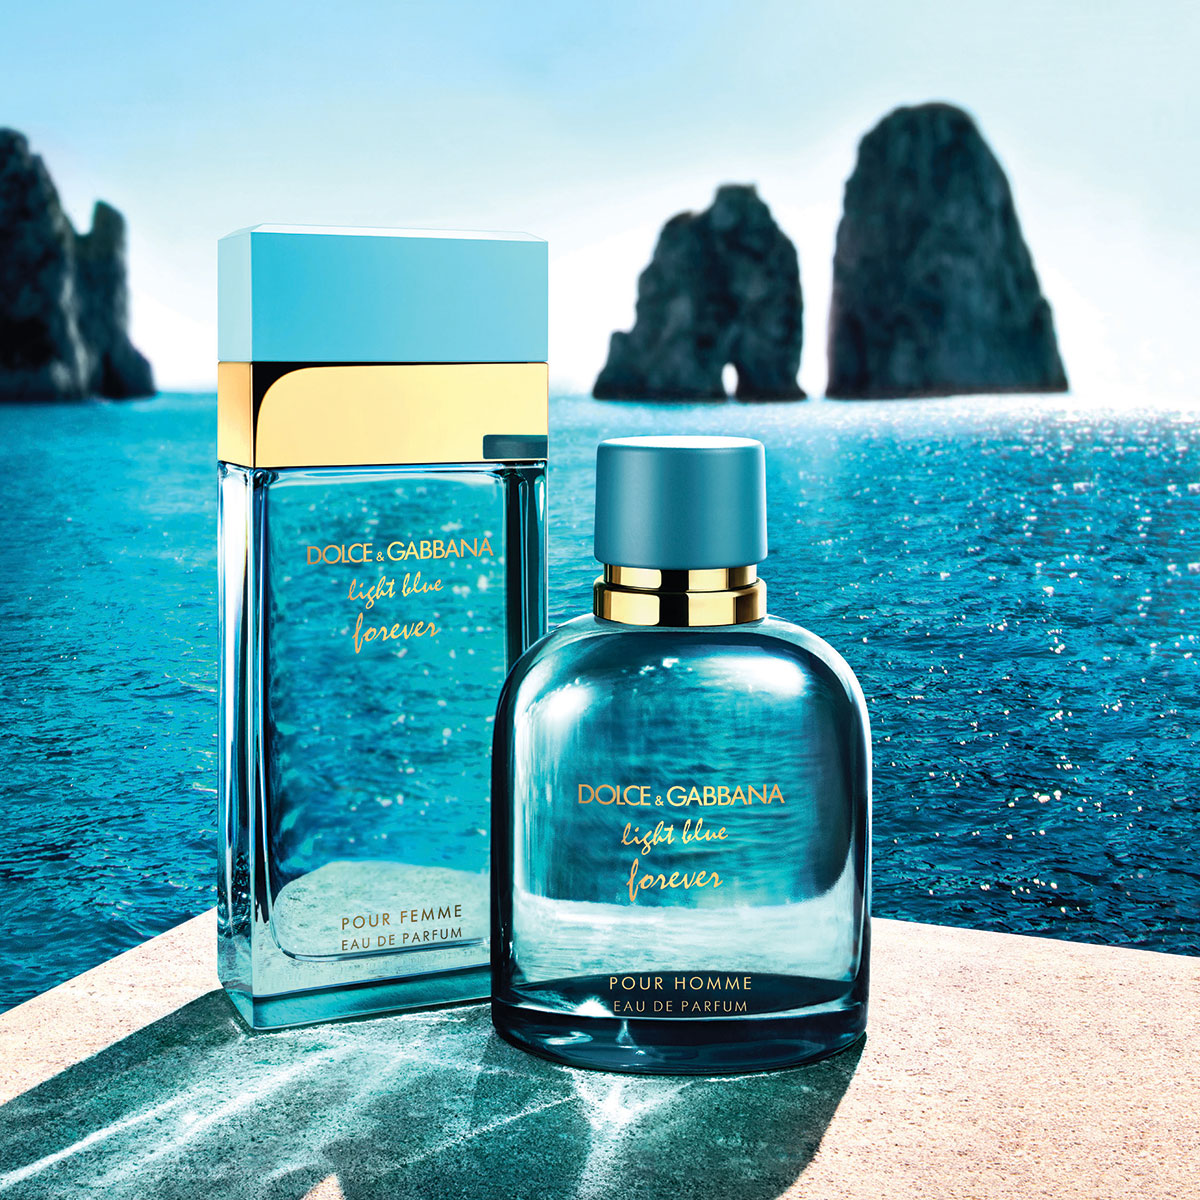 Dolce & Gabbana Light Blue Forever: Nước hoa hương biển Địa Trung Hải